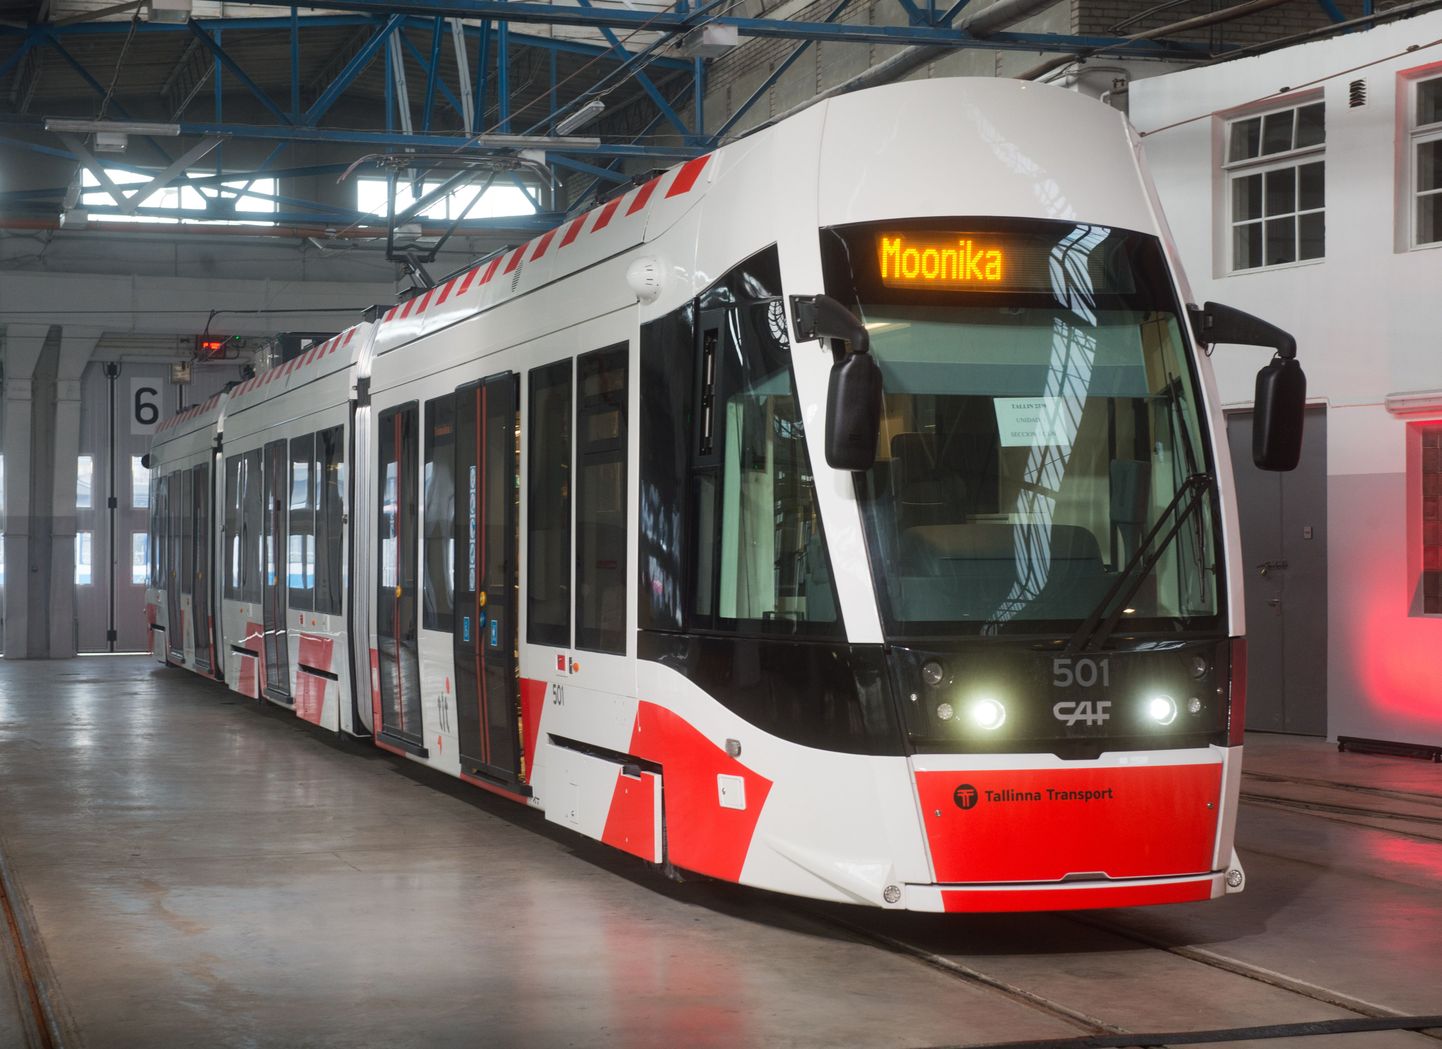 TLT esitles esimest uut trammi, mis sai nimeks Moonika.